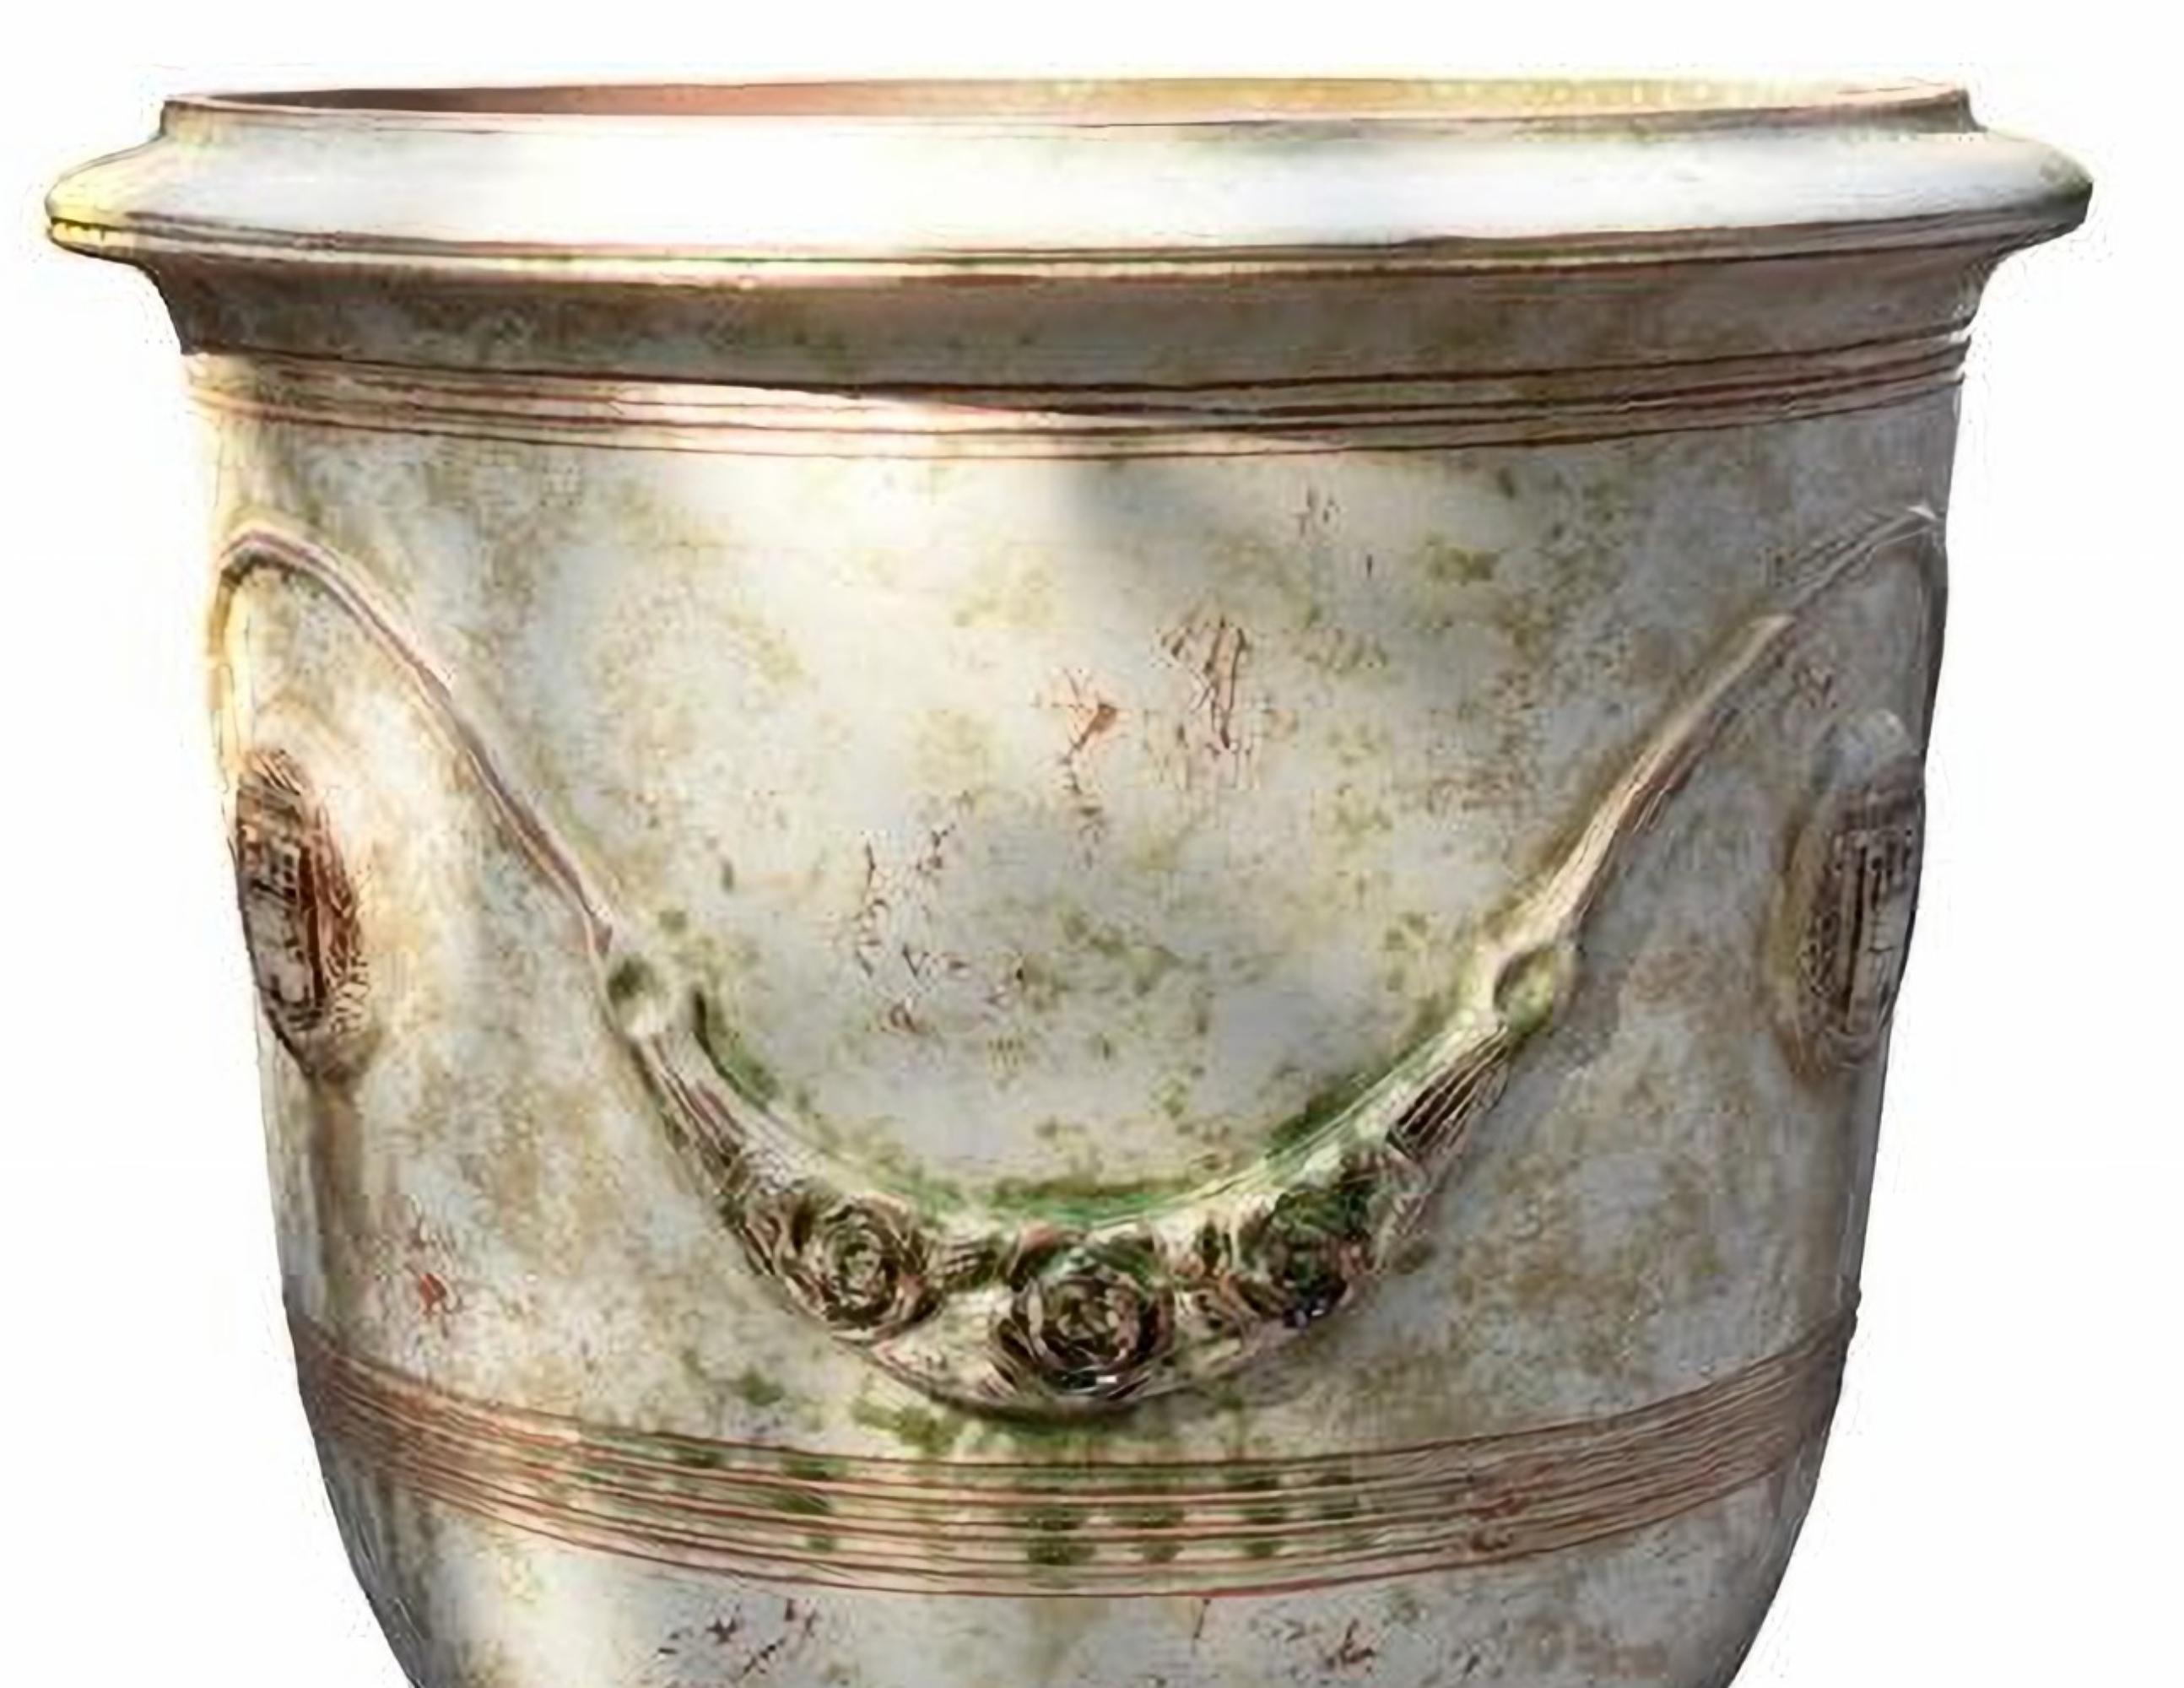 Paire de vases en majolique des Cévennes (France) début 20ème siècle

Les pots d'Anduze sont une spécialité artisanale des Cévennes, région culturelle et chaîne de montagnes du centre-sud de la France, située au sud-est du Massif central. Il